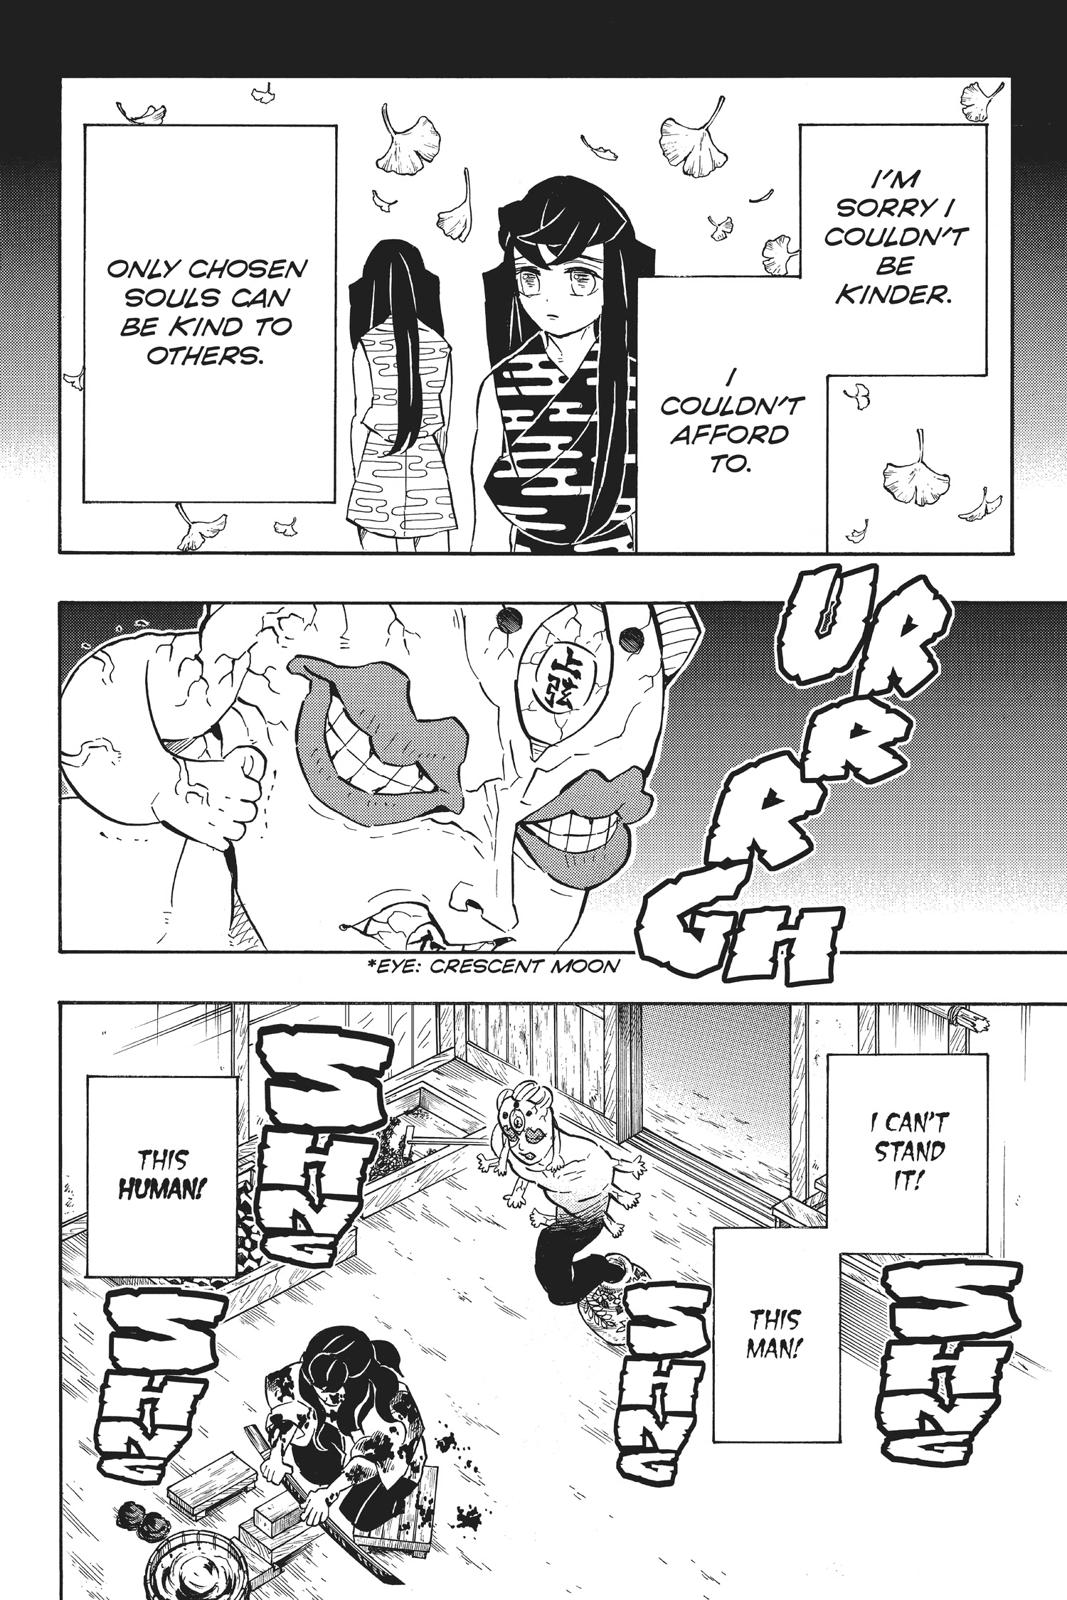 Demon Slayer Manga Manga Chapter - 119 - image 1